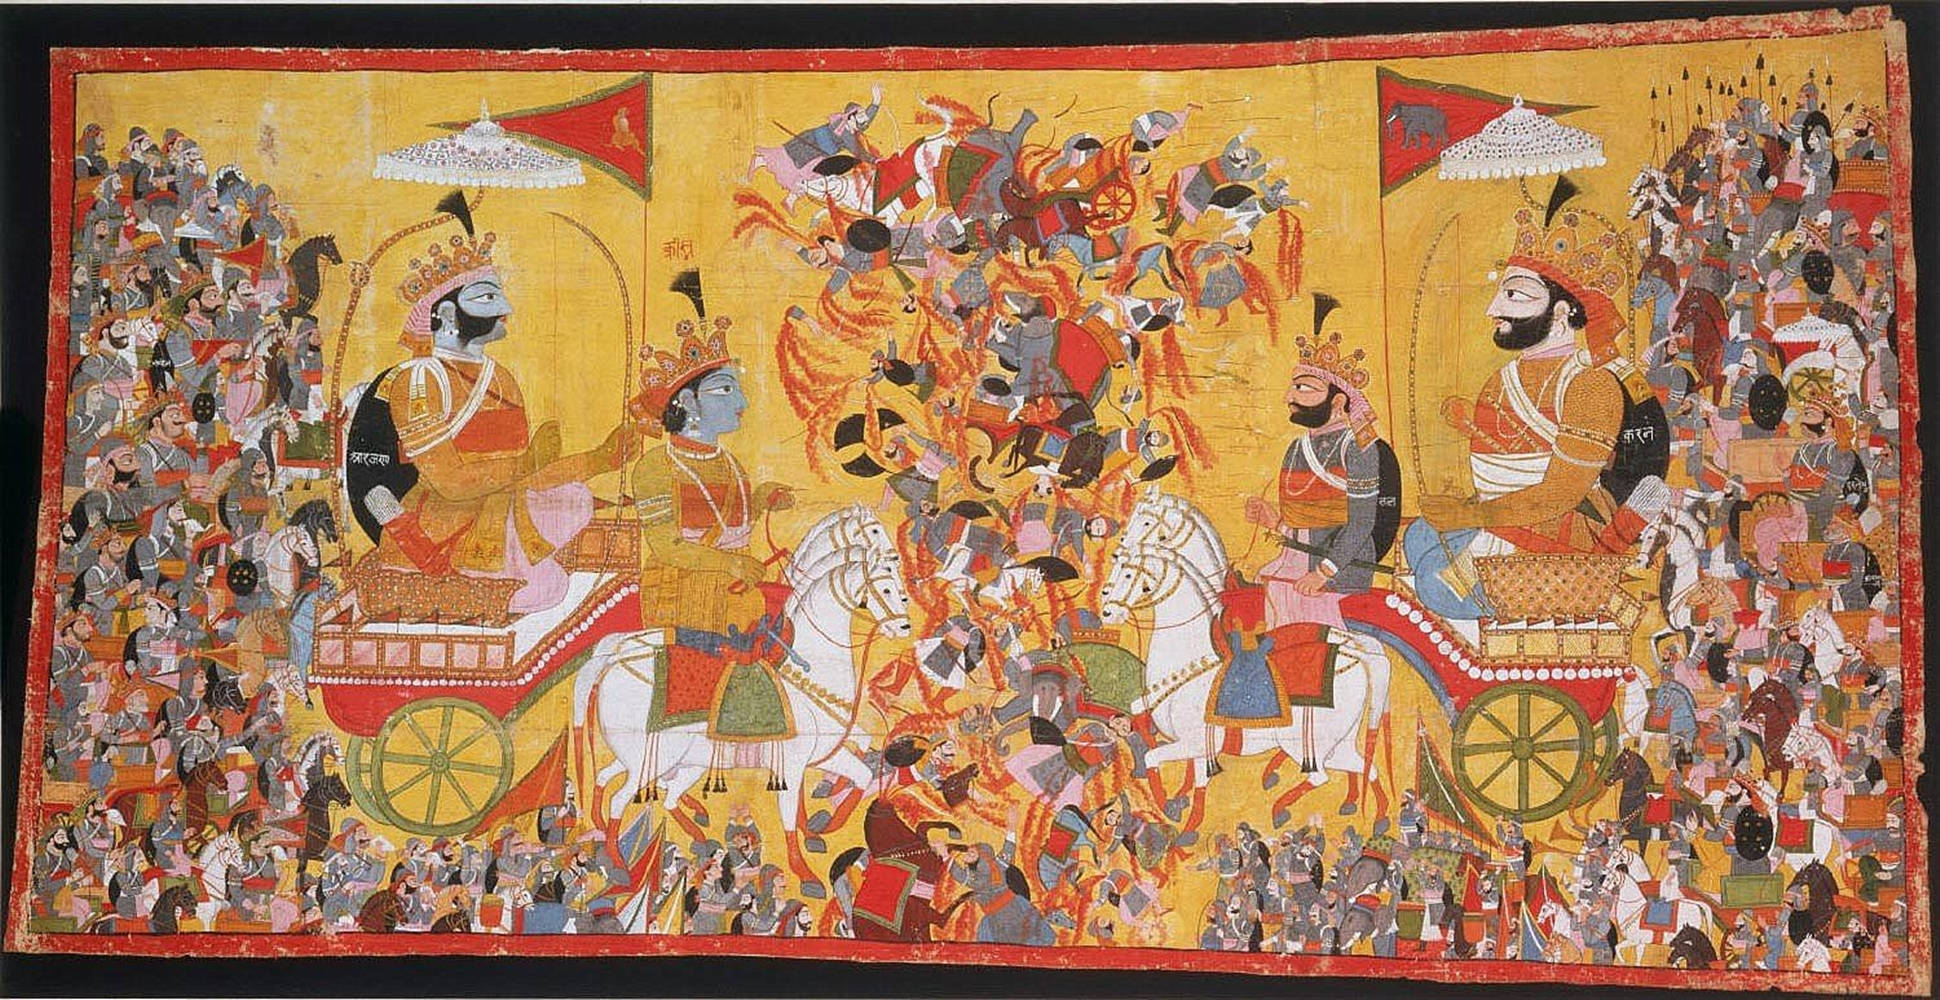 Darstellungvon Krishna Und Arjuna In Der Schlacht Von Kurukshetra. Wallpaper